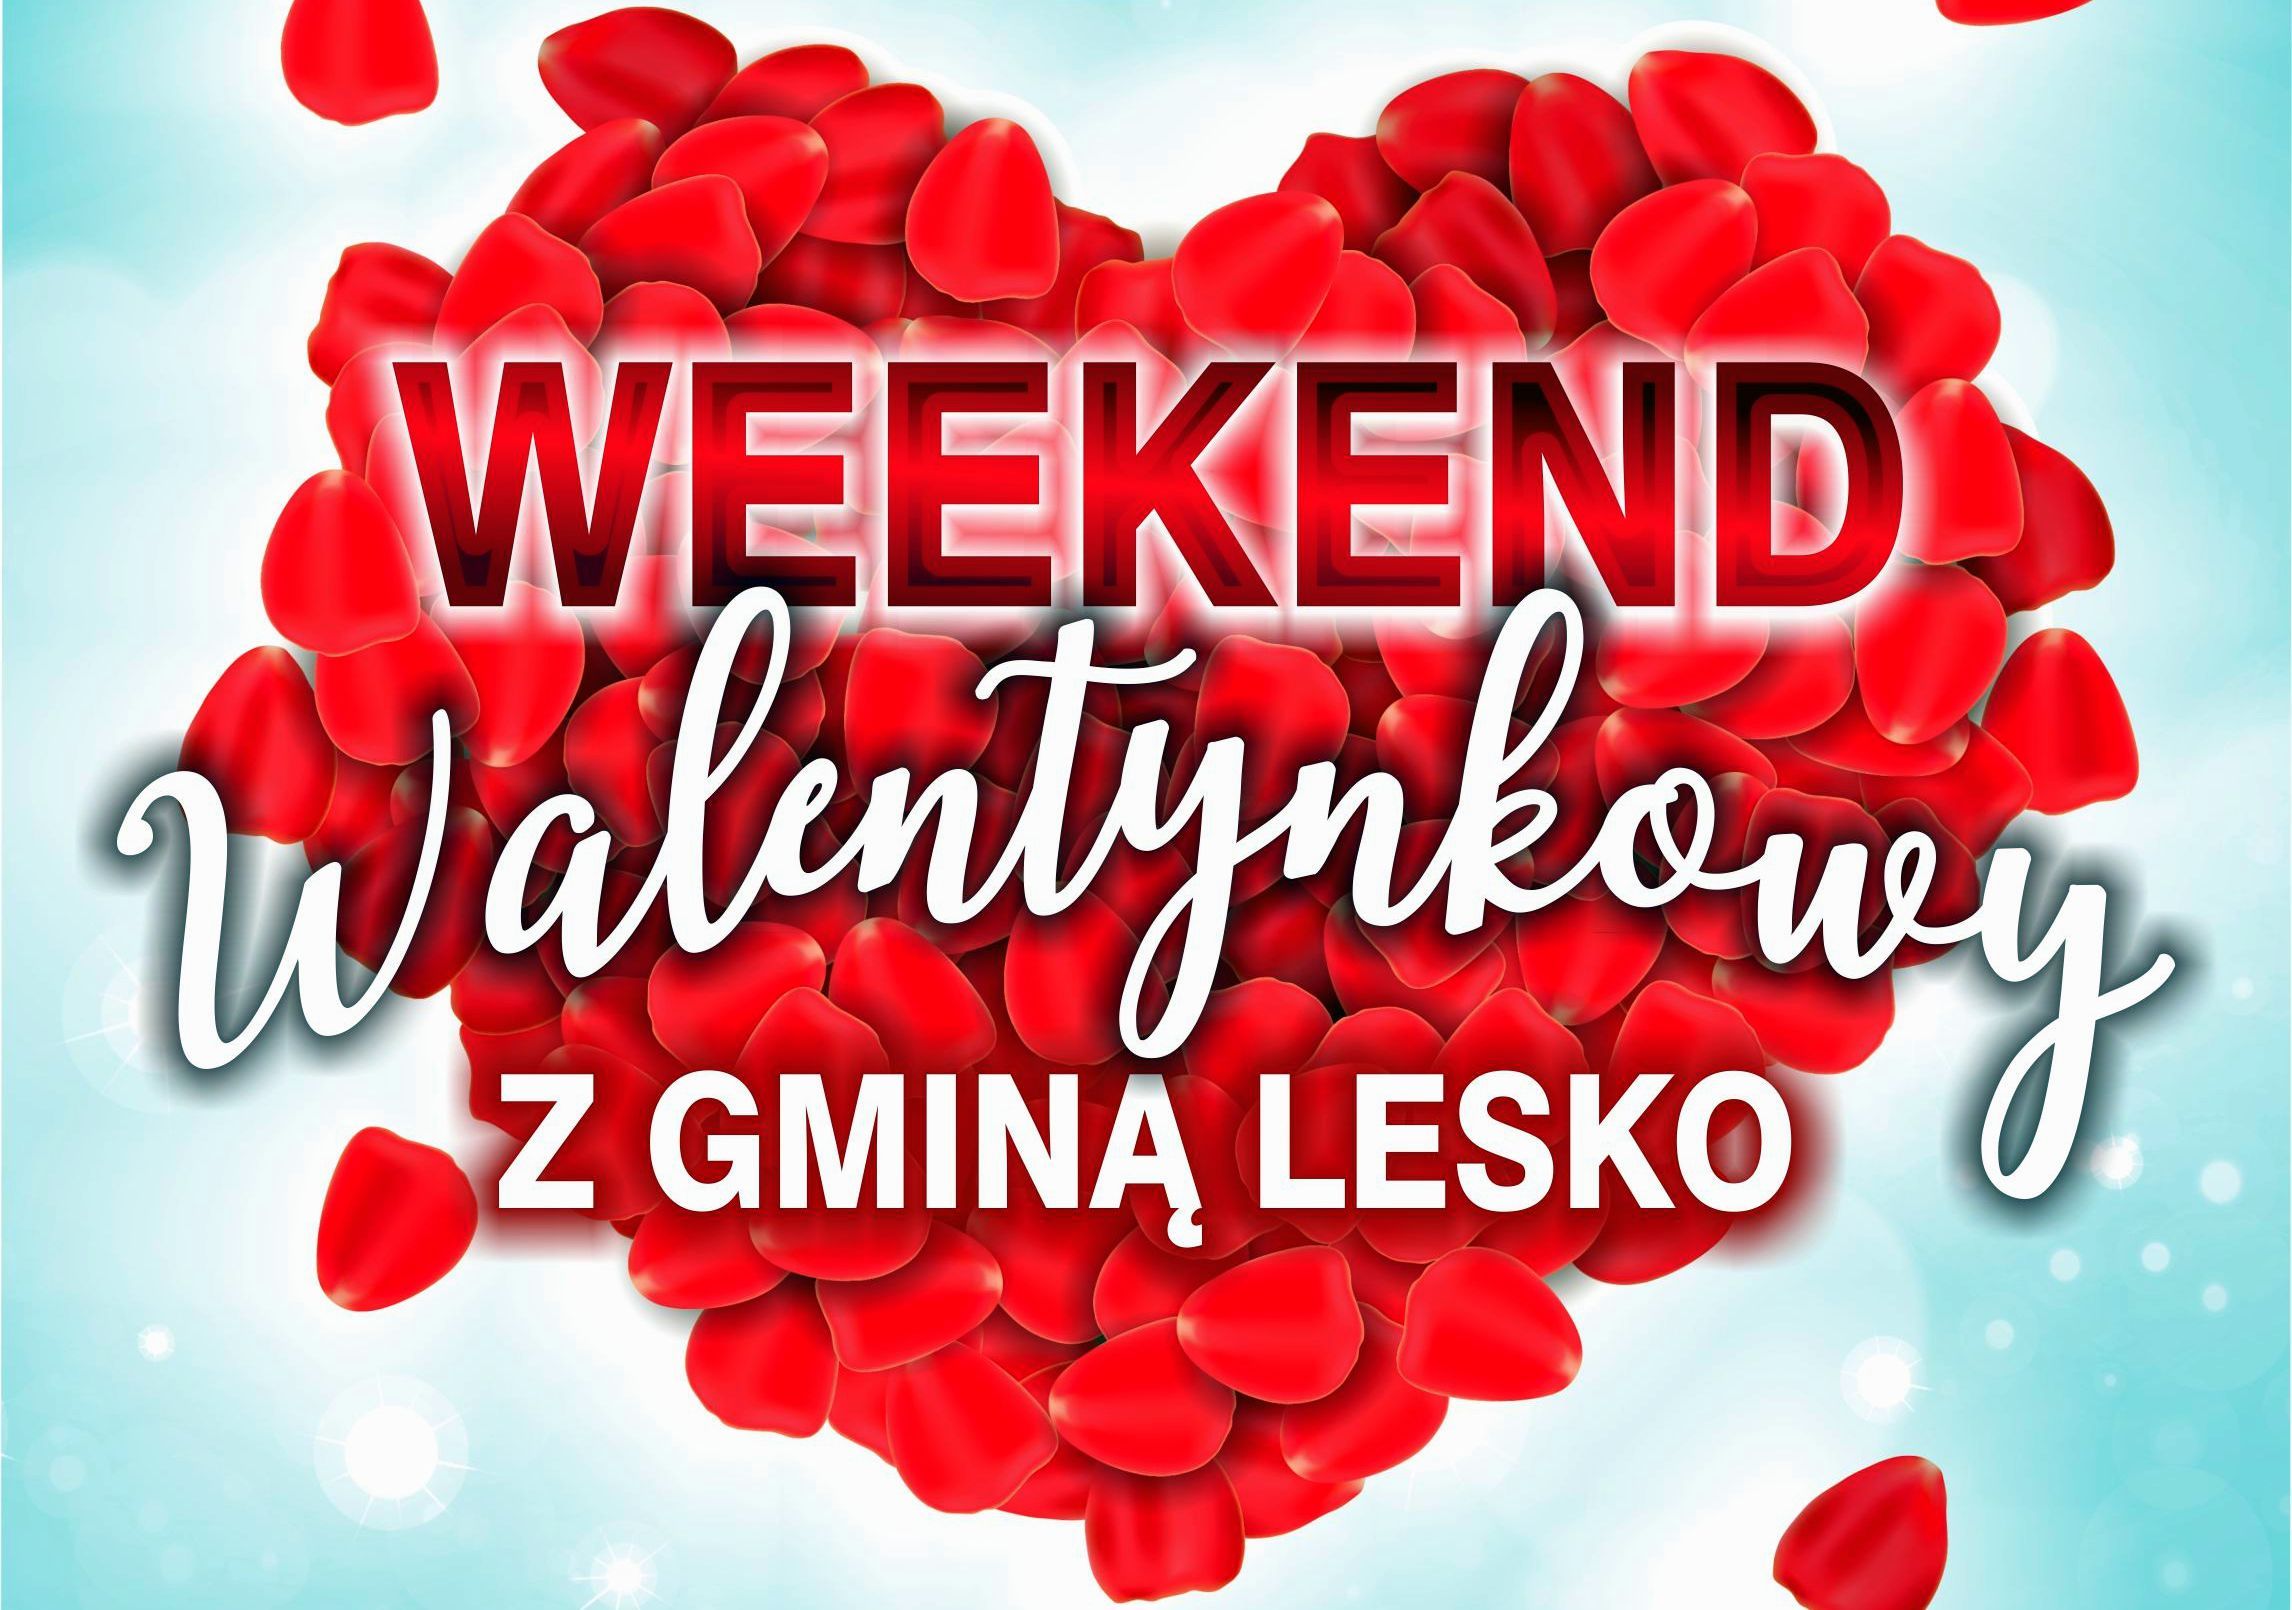 Walentynkowy weekend z Gminą Lesko będzie wyjątkowy! - Zdjęcie główne